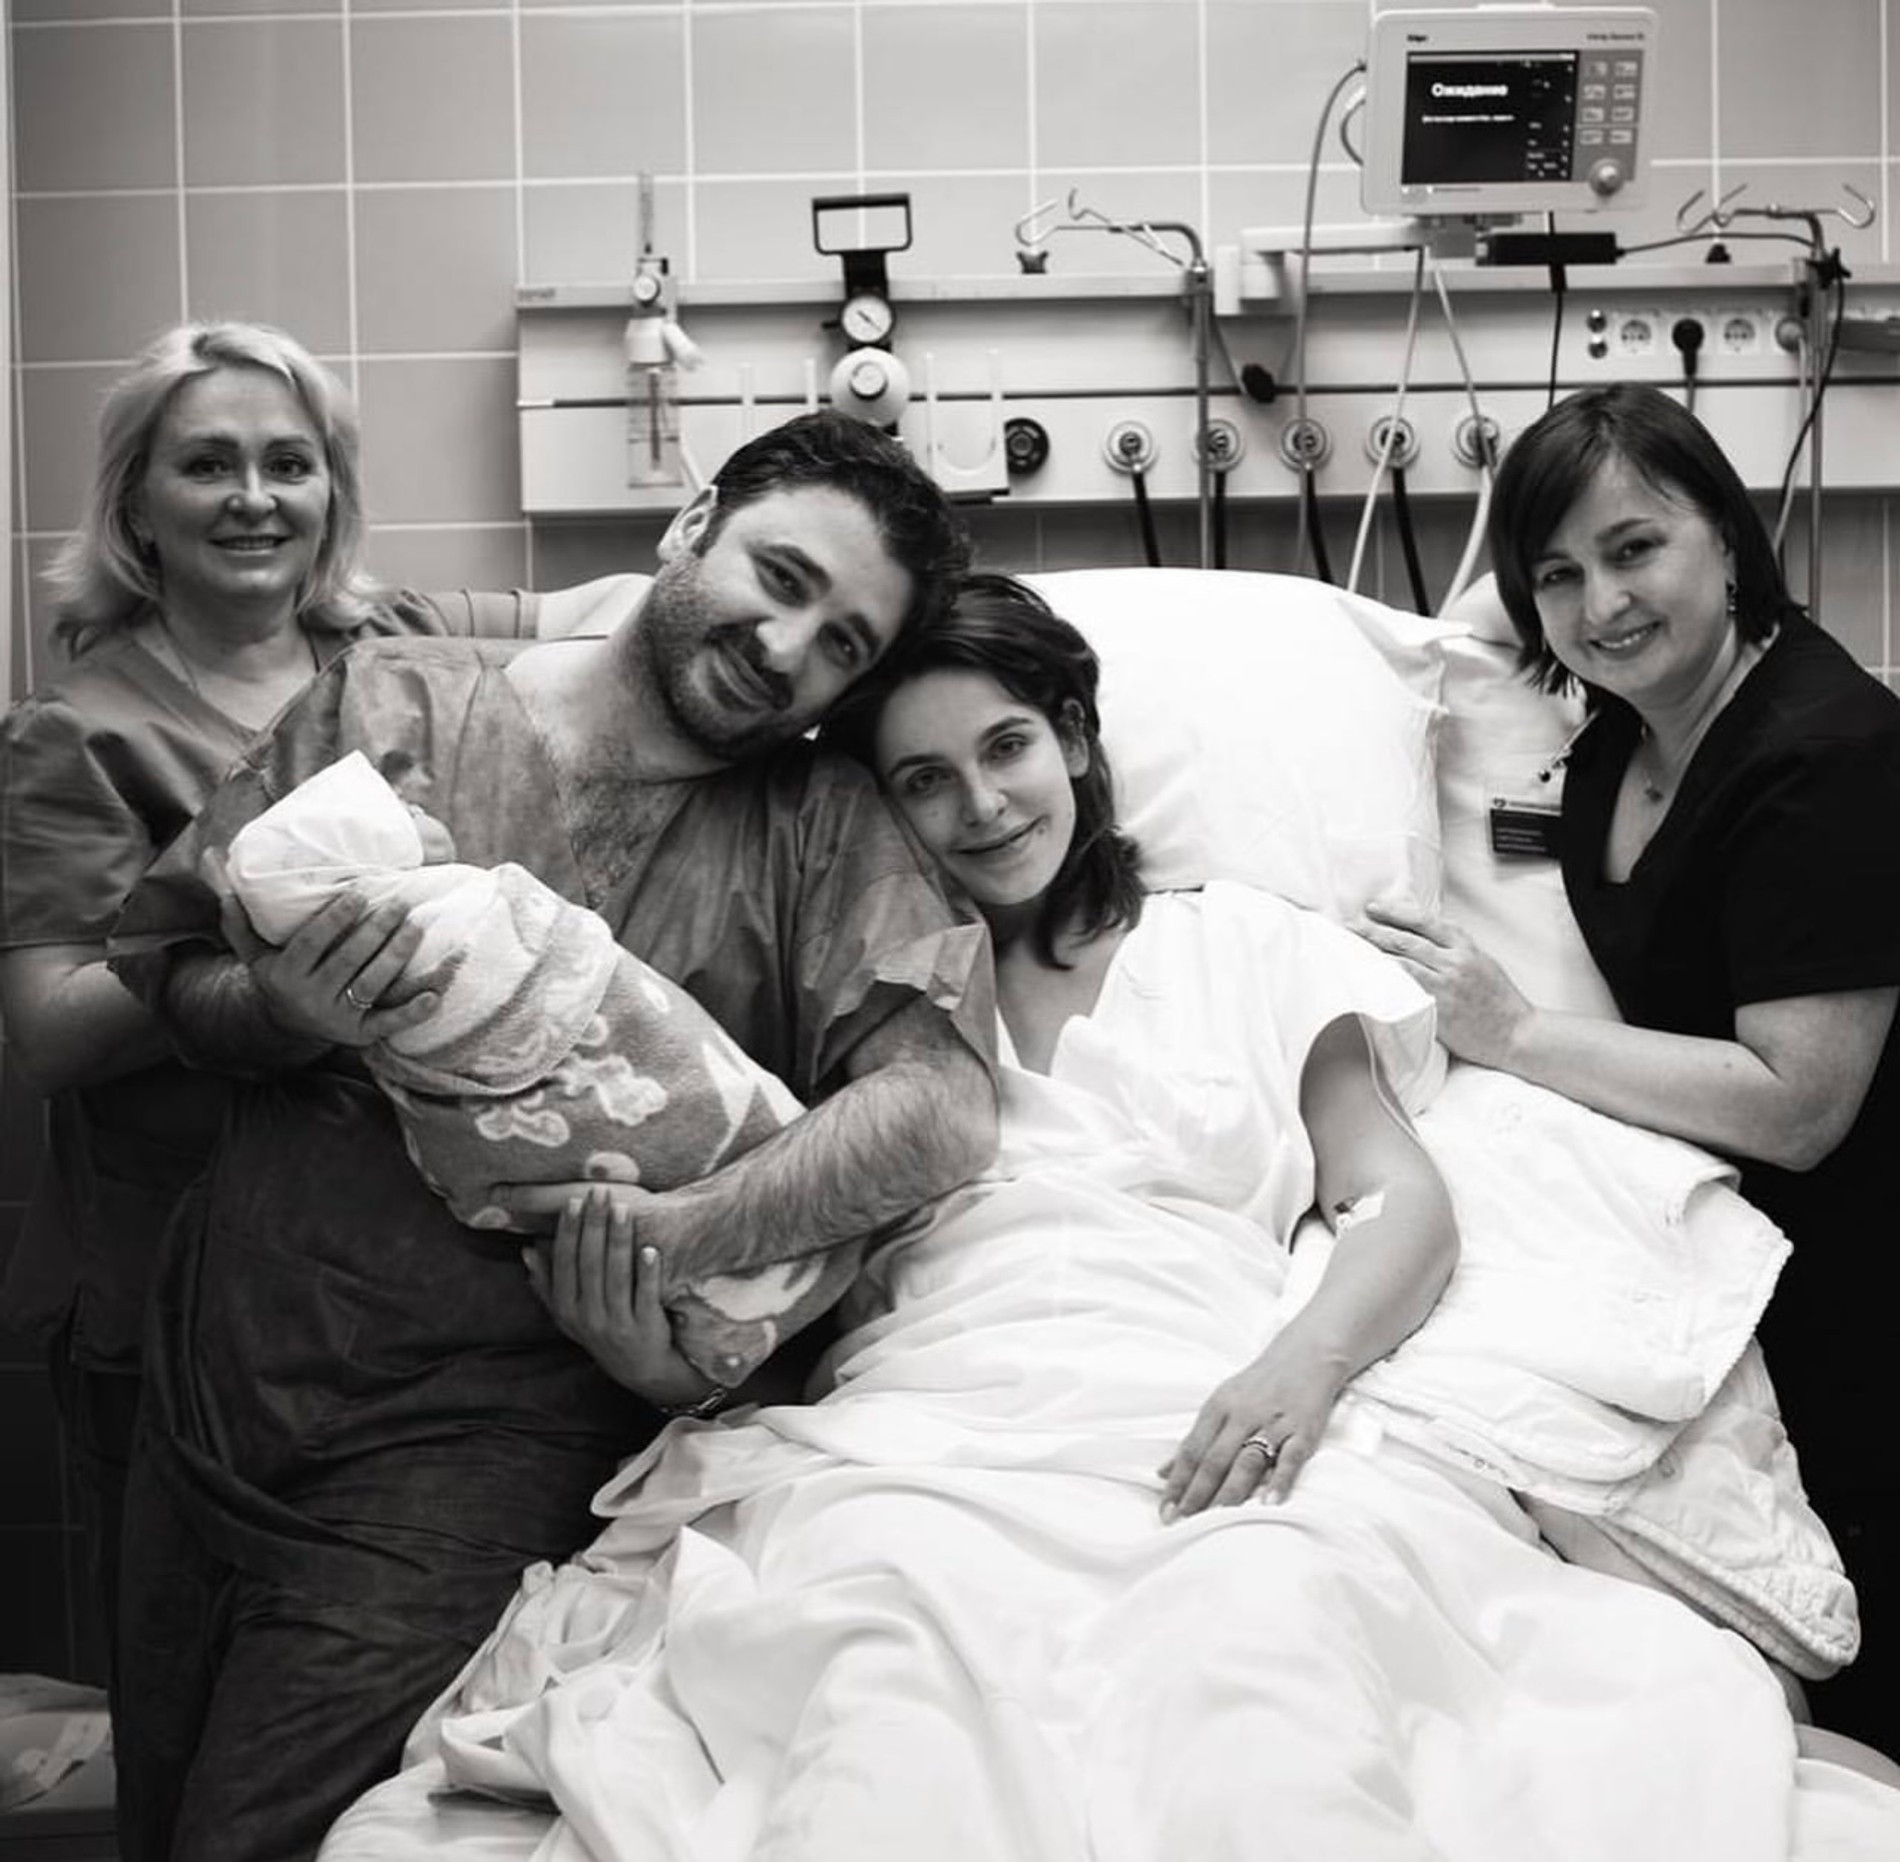 Лиза Моряк и Сарик Андреасян с новорожденной дочерью и семьей
Фото: Инстаграм (запрещен в РФ)